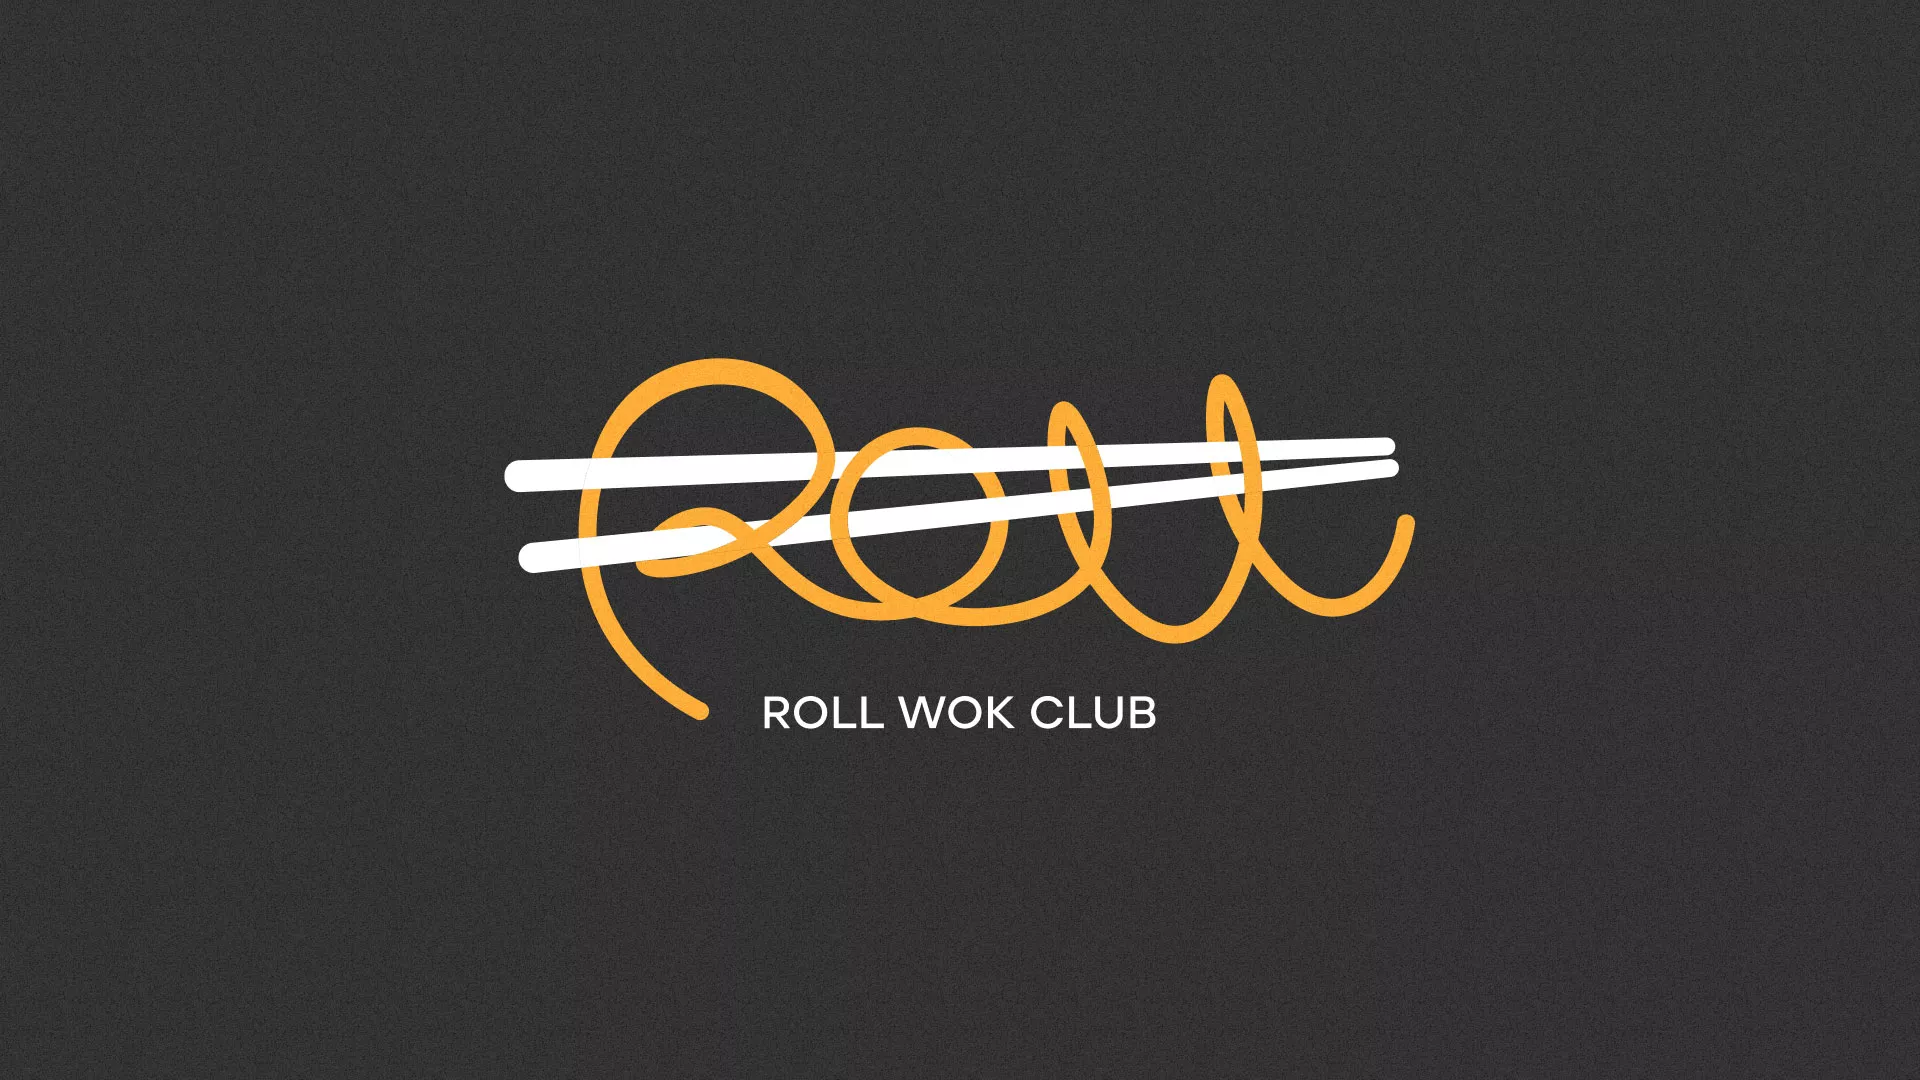 Создание дизайна листовок суши-бара «Roll Wok Club» в Болохово